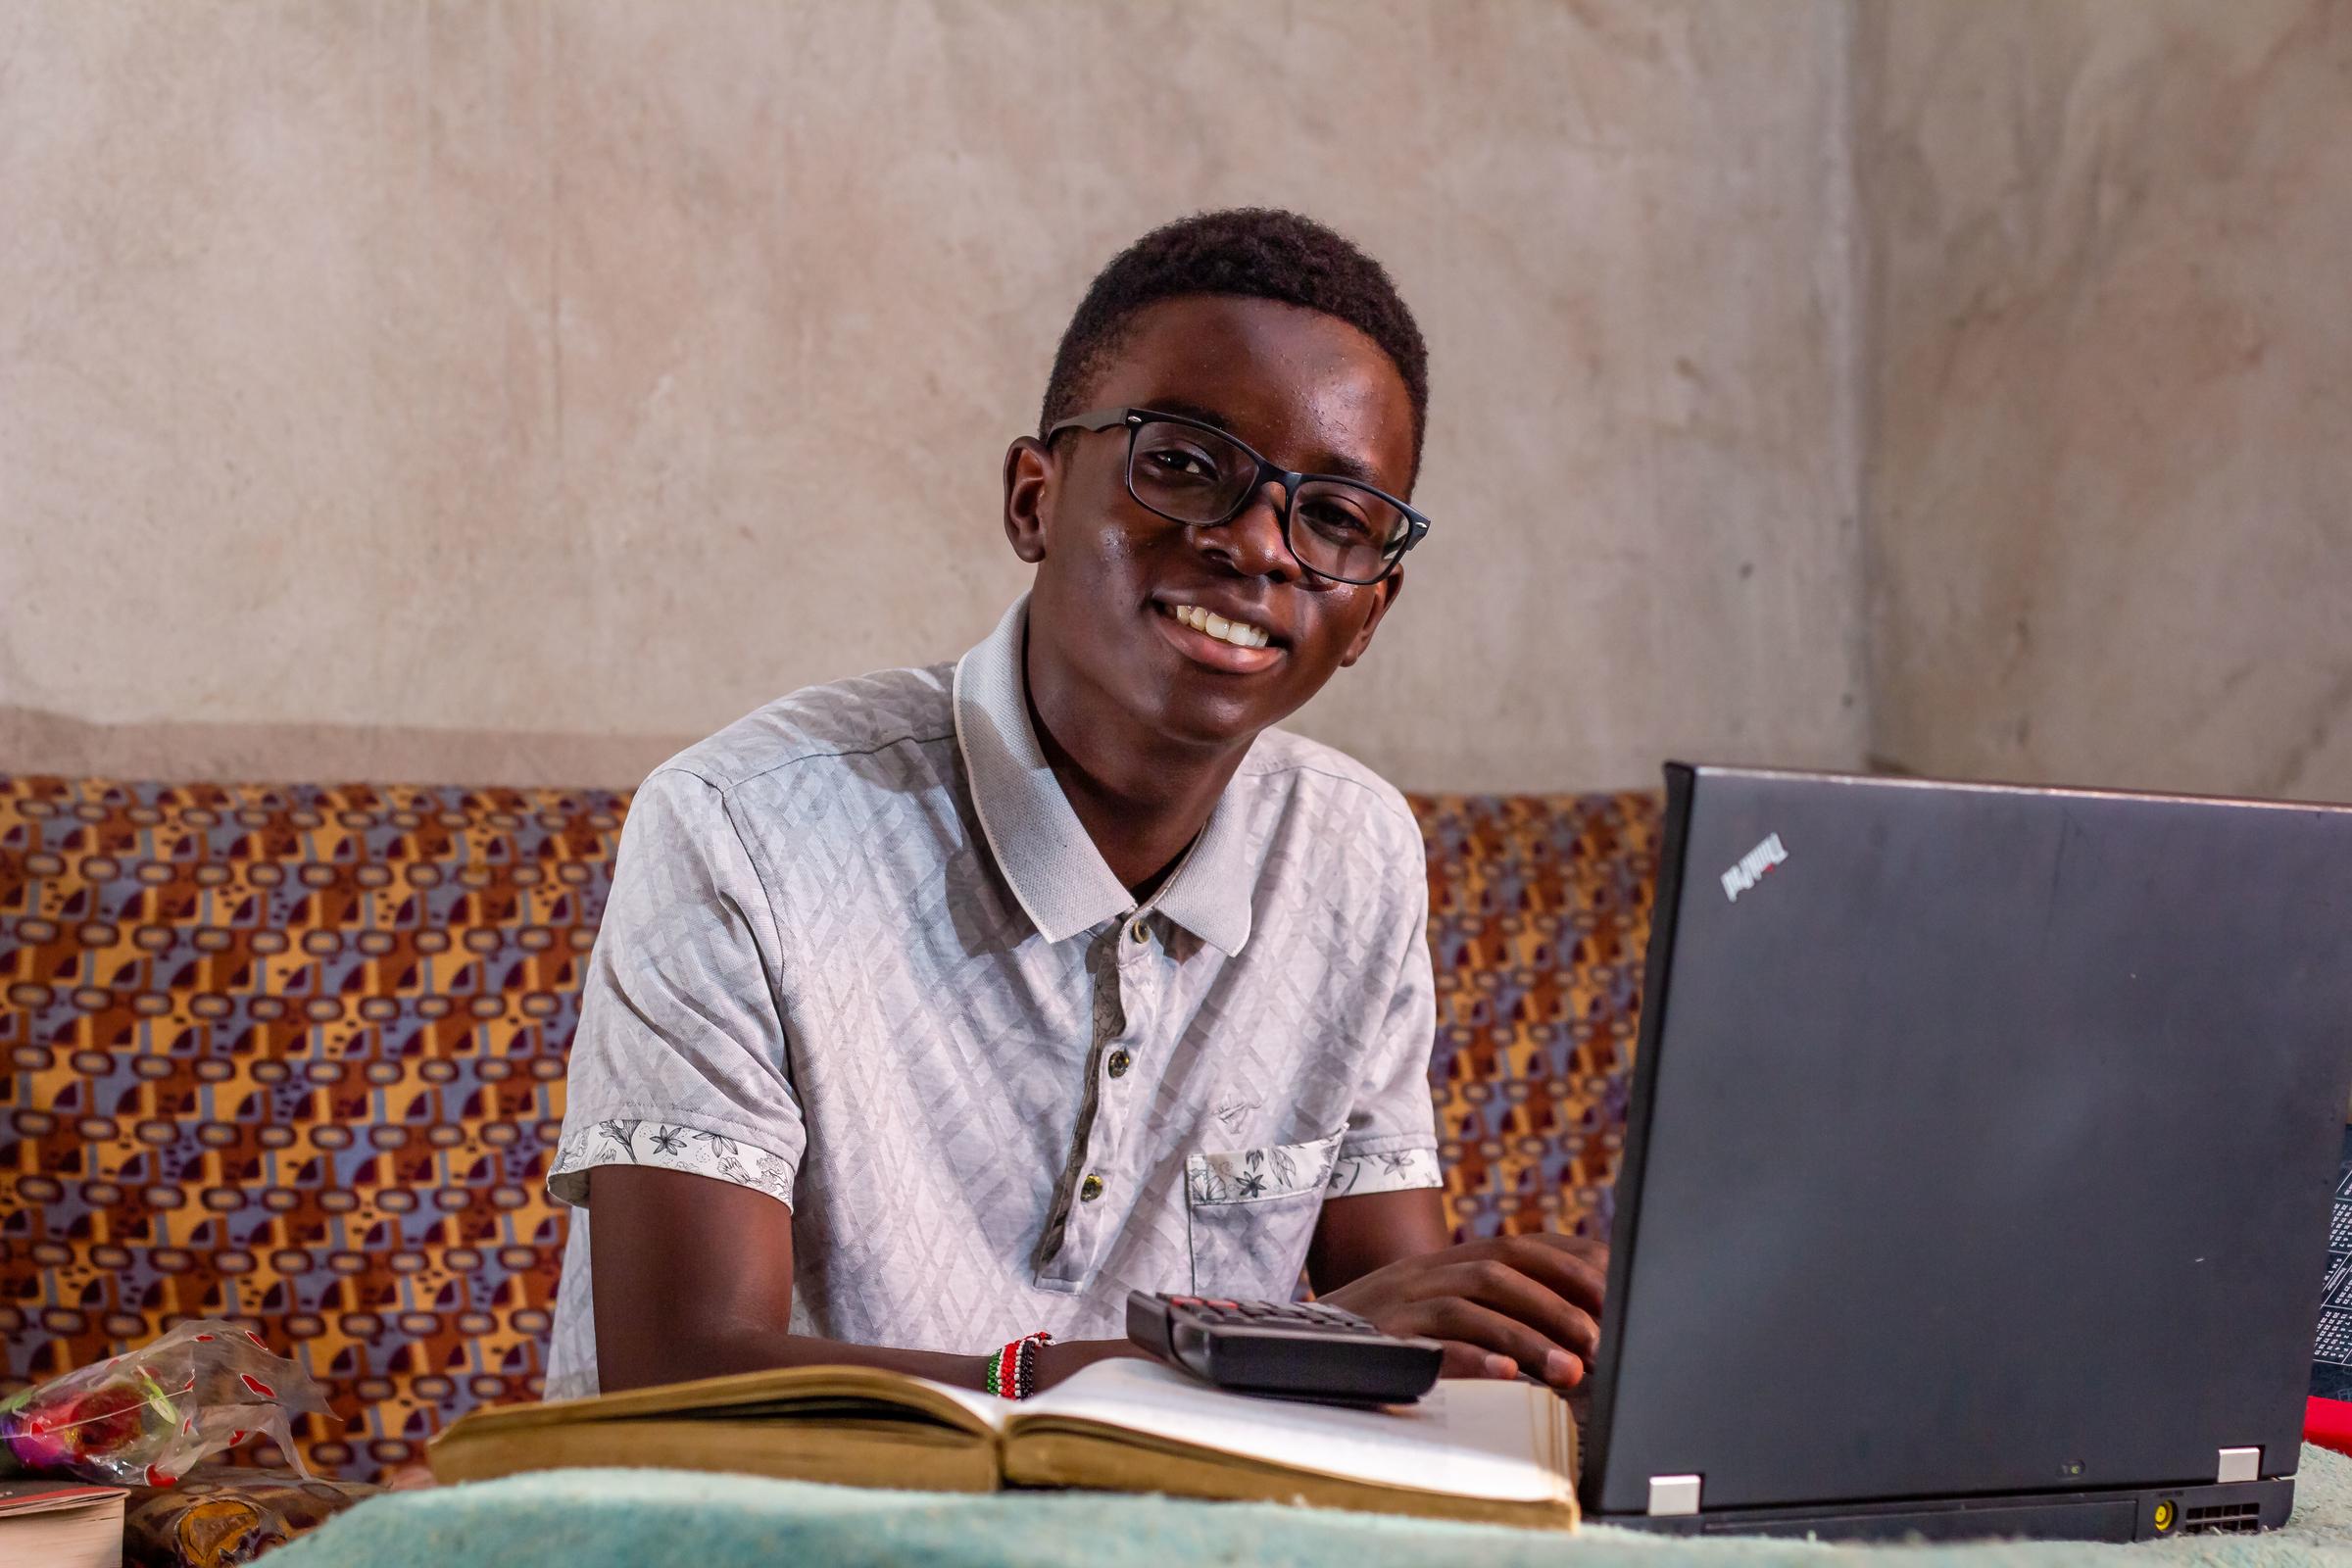 Junge sitzt am Laptop und lächelt in die Kamera (Quelle: Kindernothilfe)